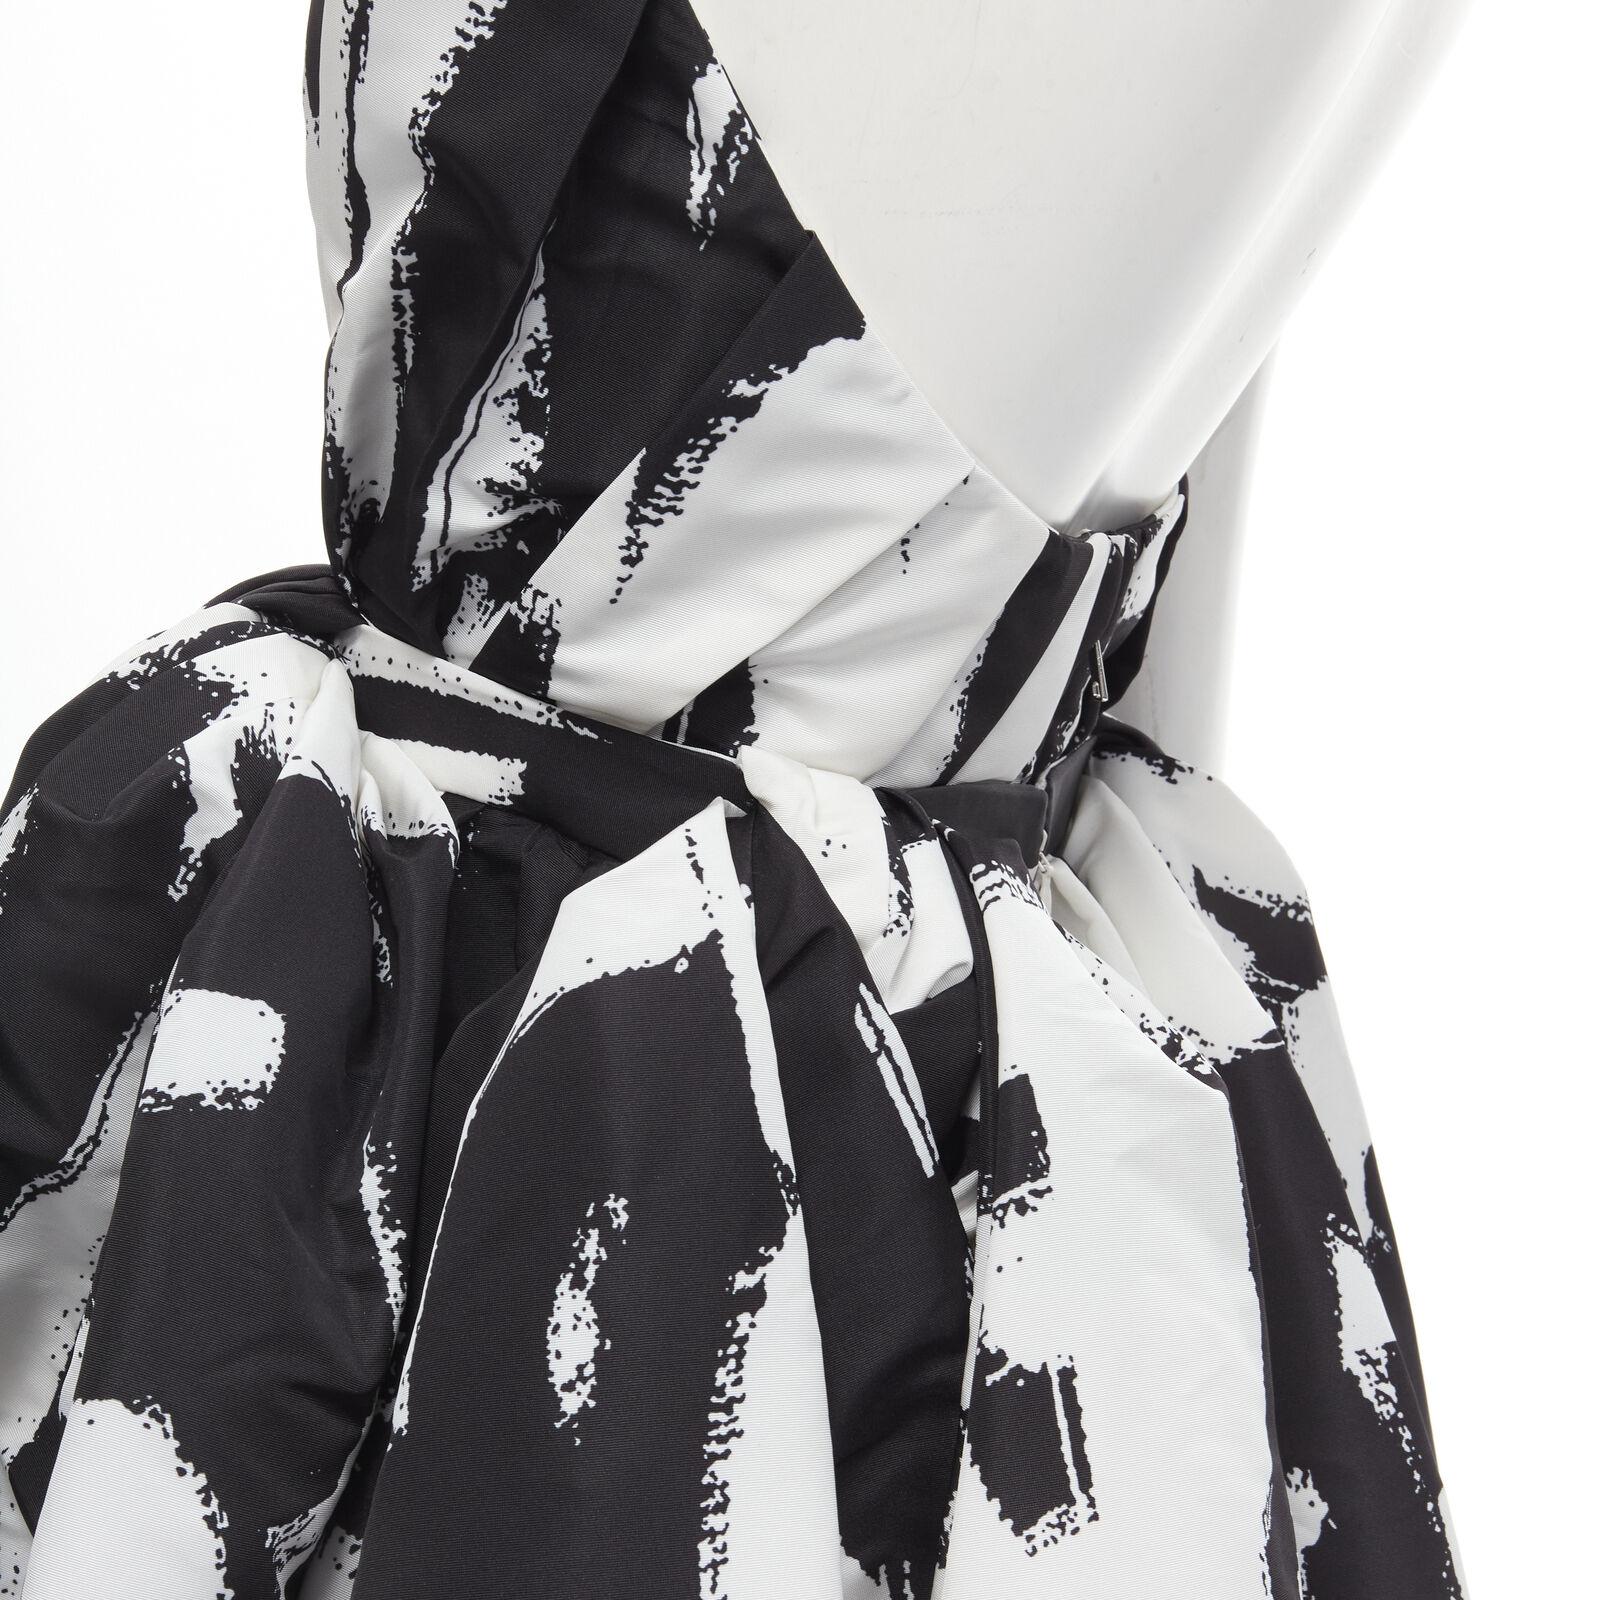 ALEXANDER MCQUEEN 2022 Graffiti Brush black white boned corset gown FR40 M For Sale 4